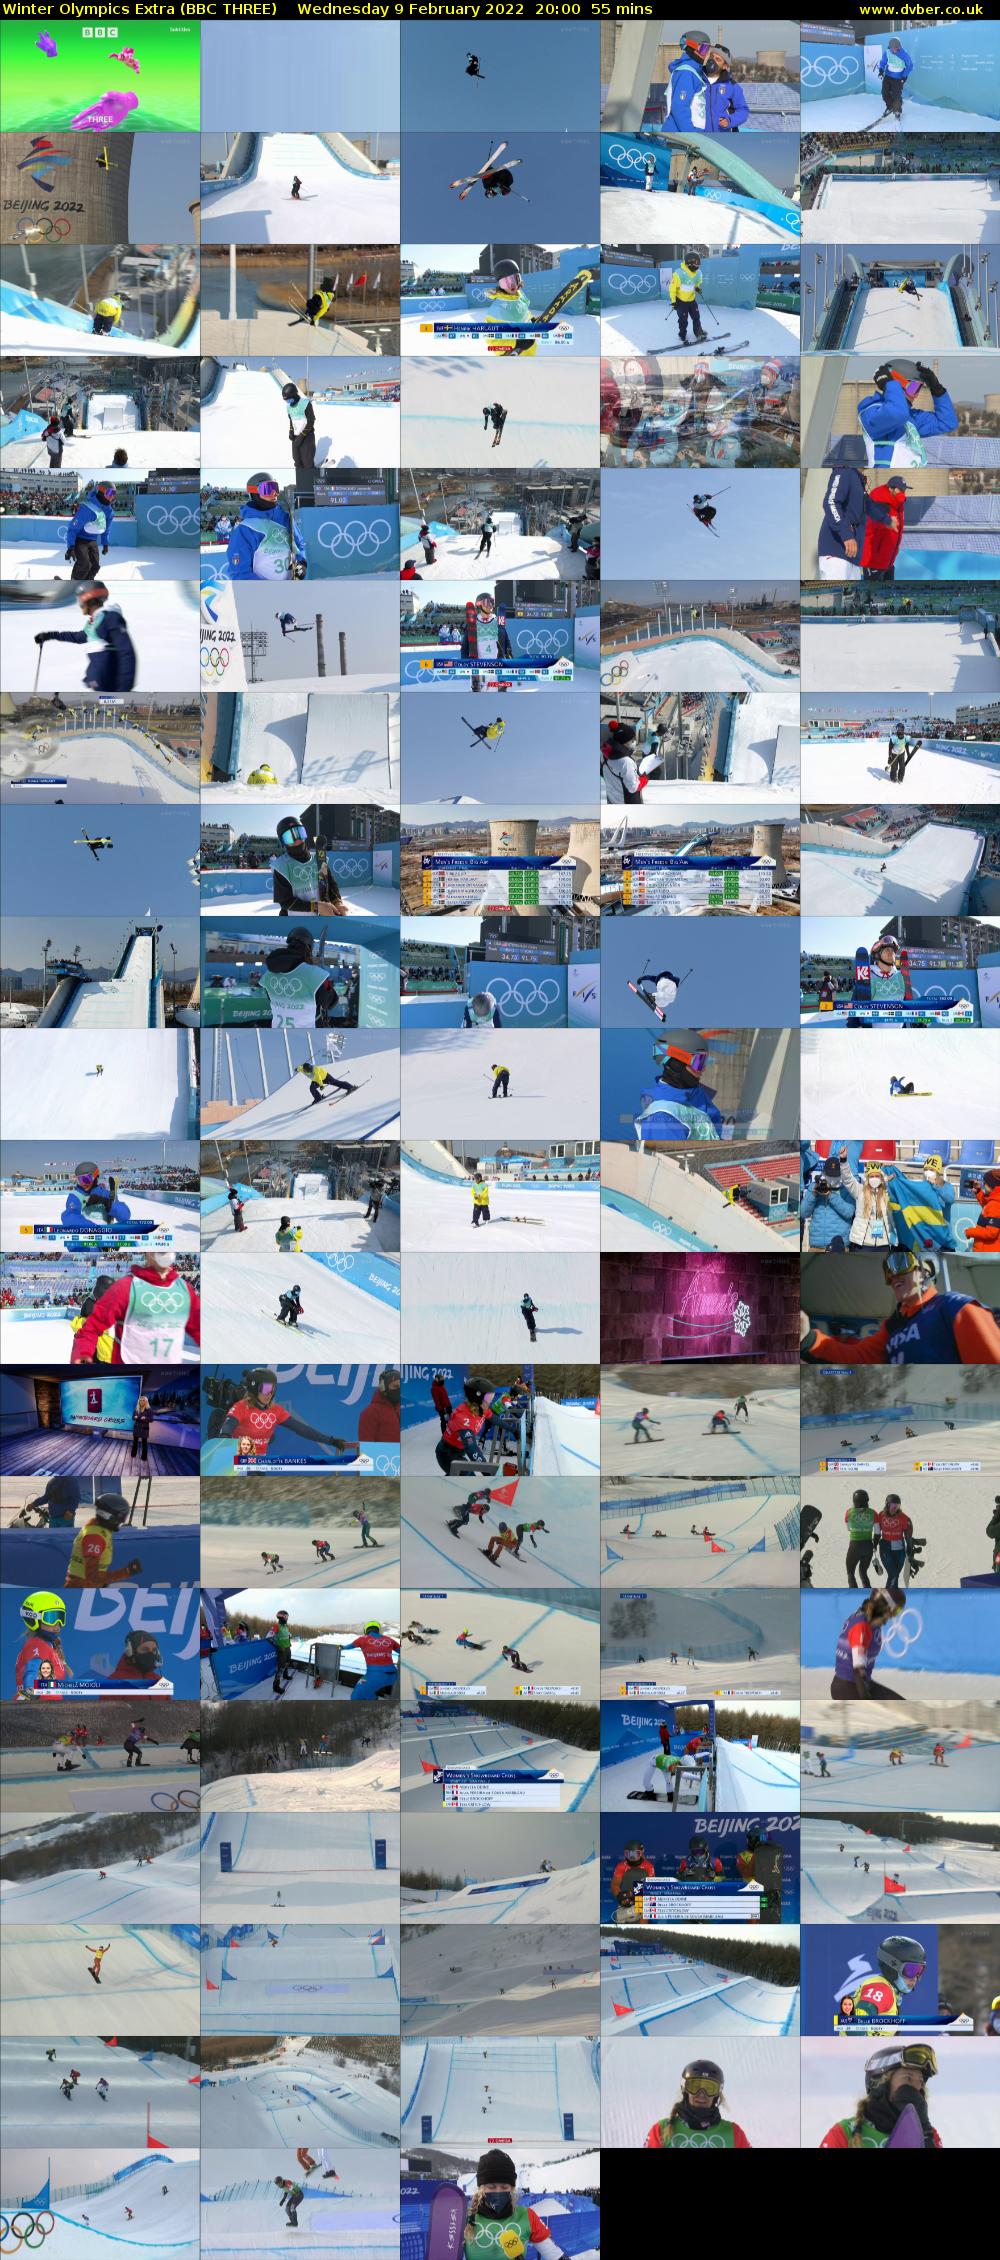 Winter Olympics Extra (BBC THREE) Wednesday 9 February 2022 20:00 - 20:55